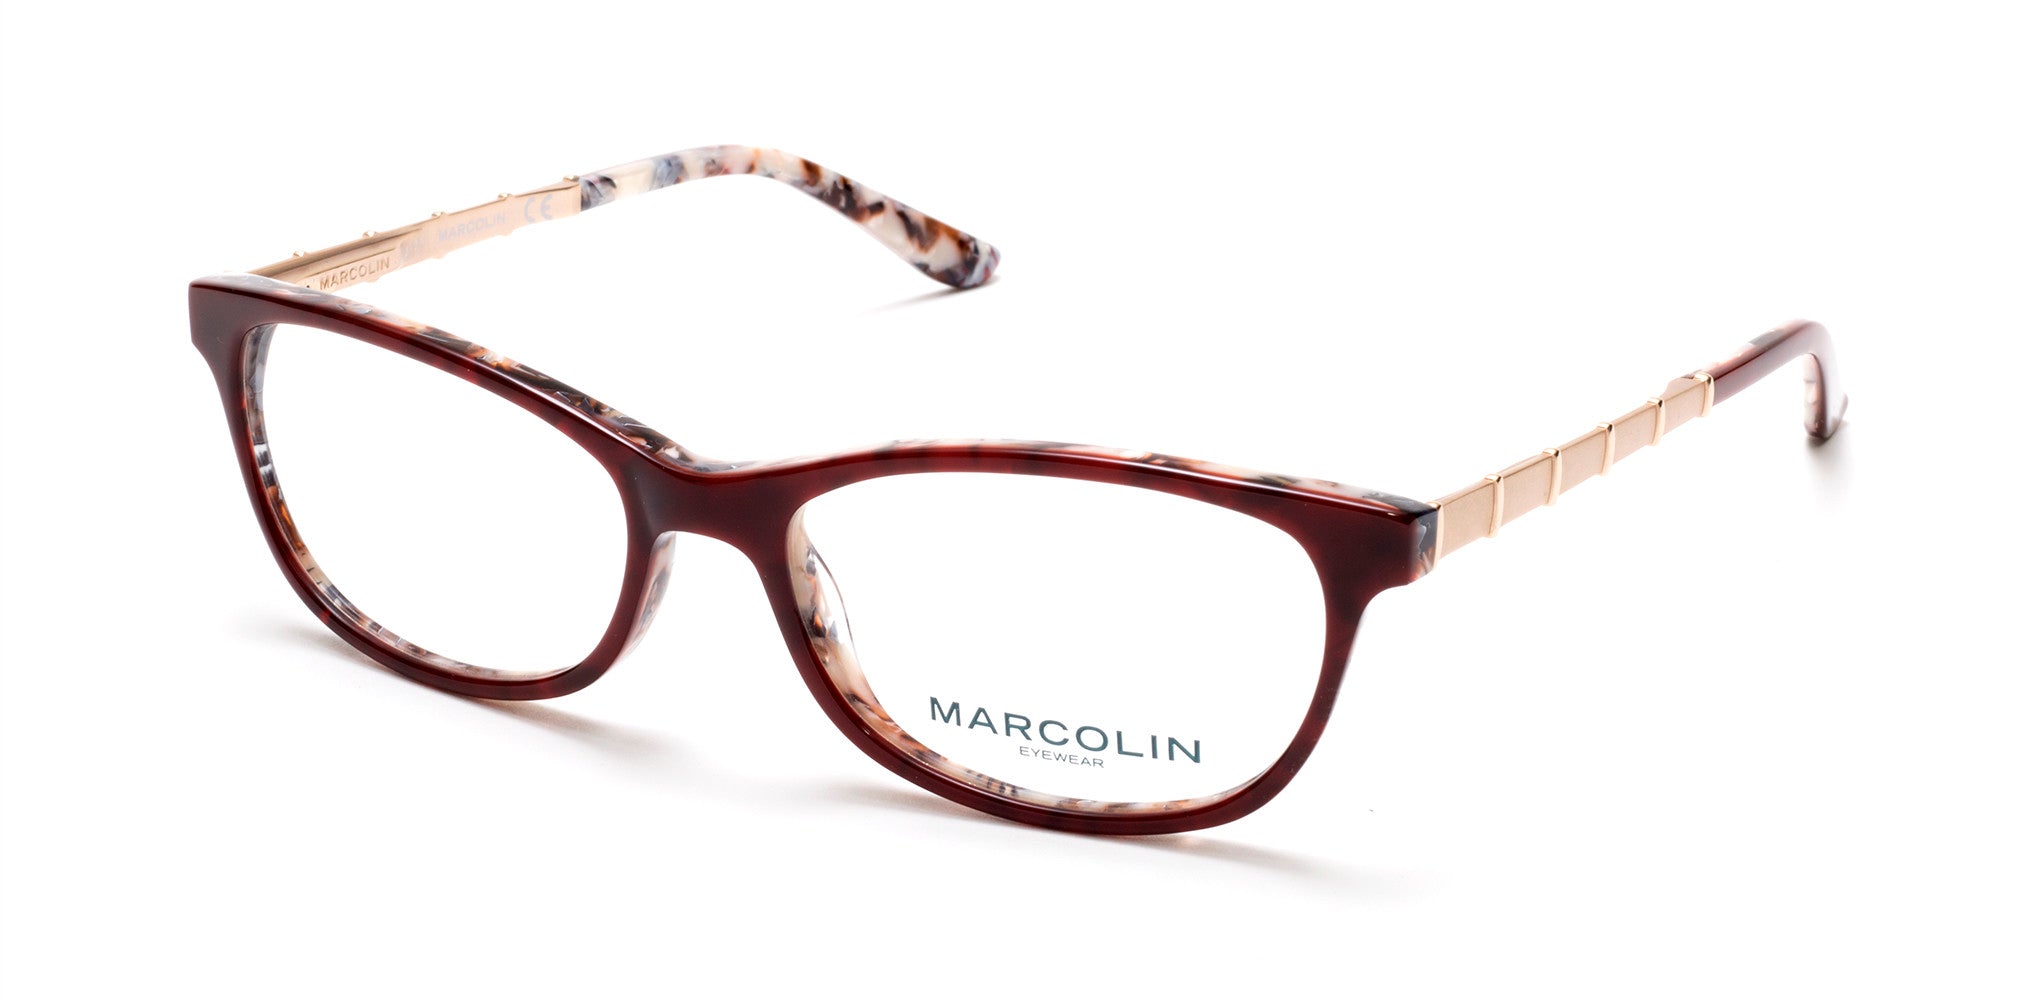 Marcolin MA5014 Oval Eyeglasses 071-071 - Bordeaux